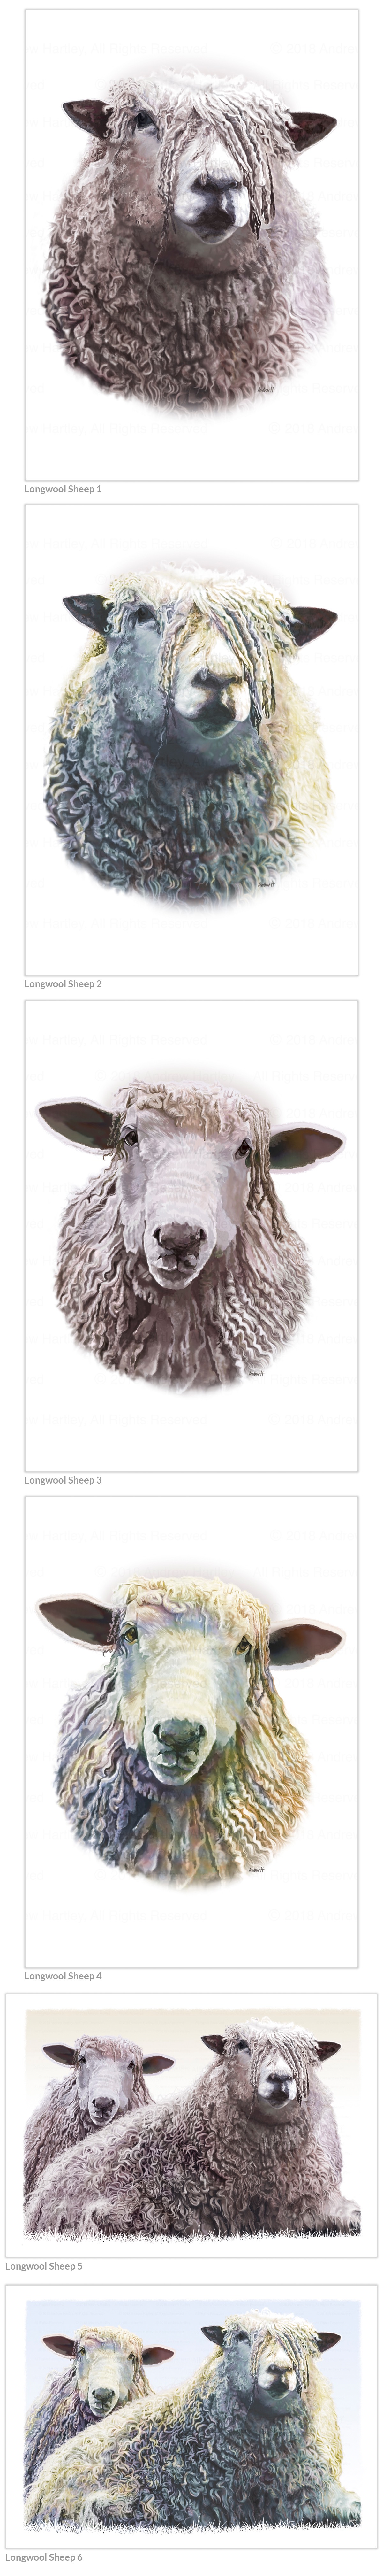 longwool-sheep-asizes-1-6-1200wide